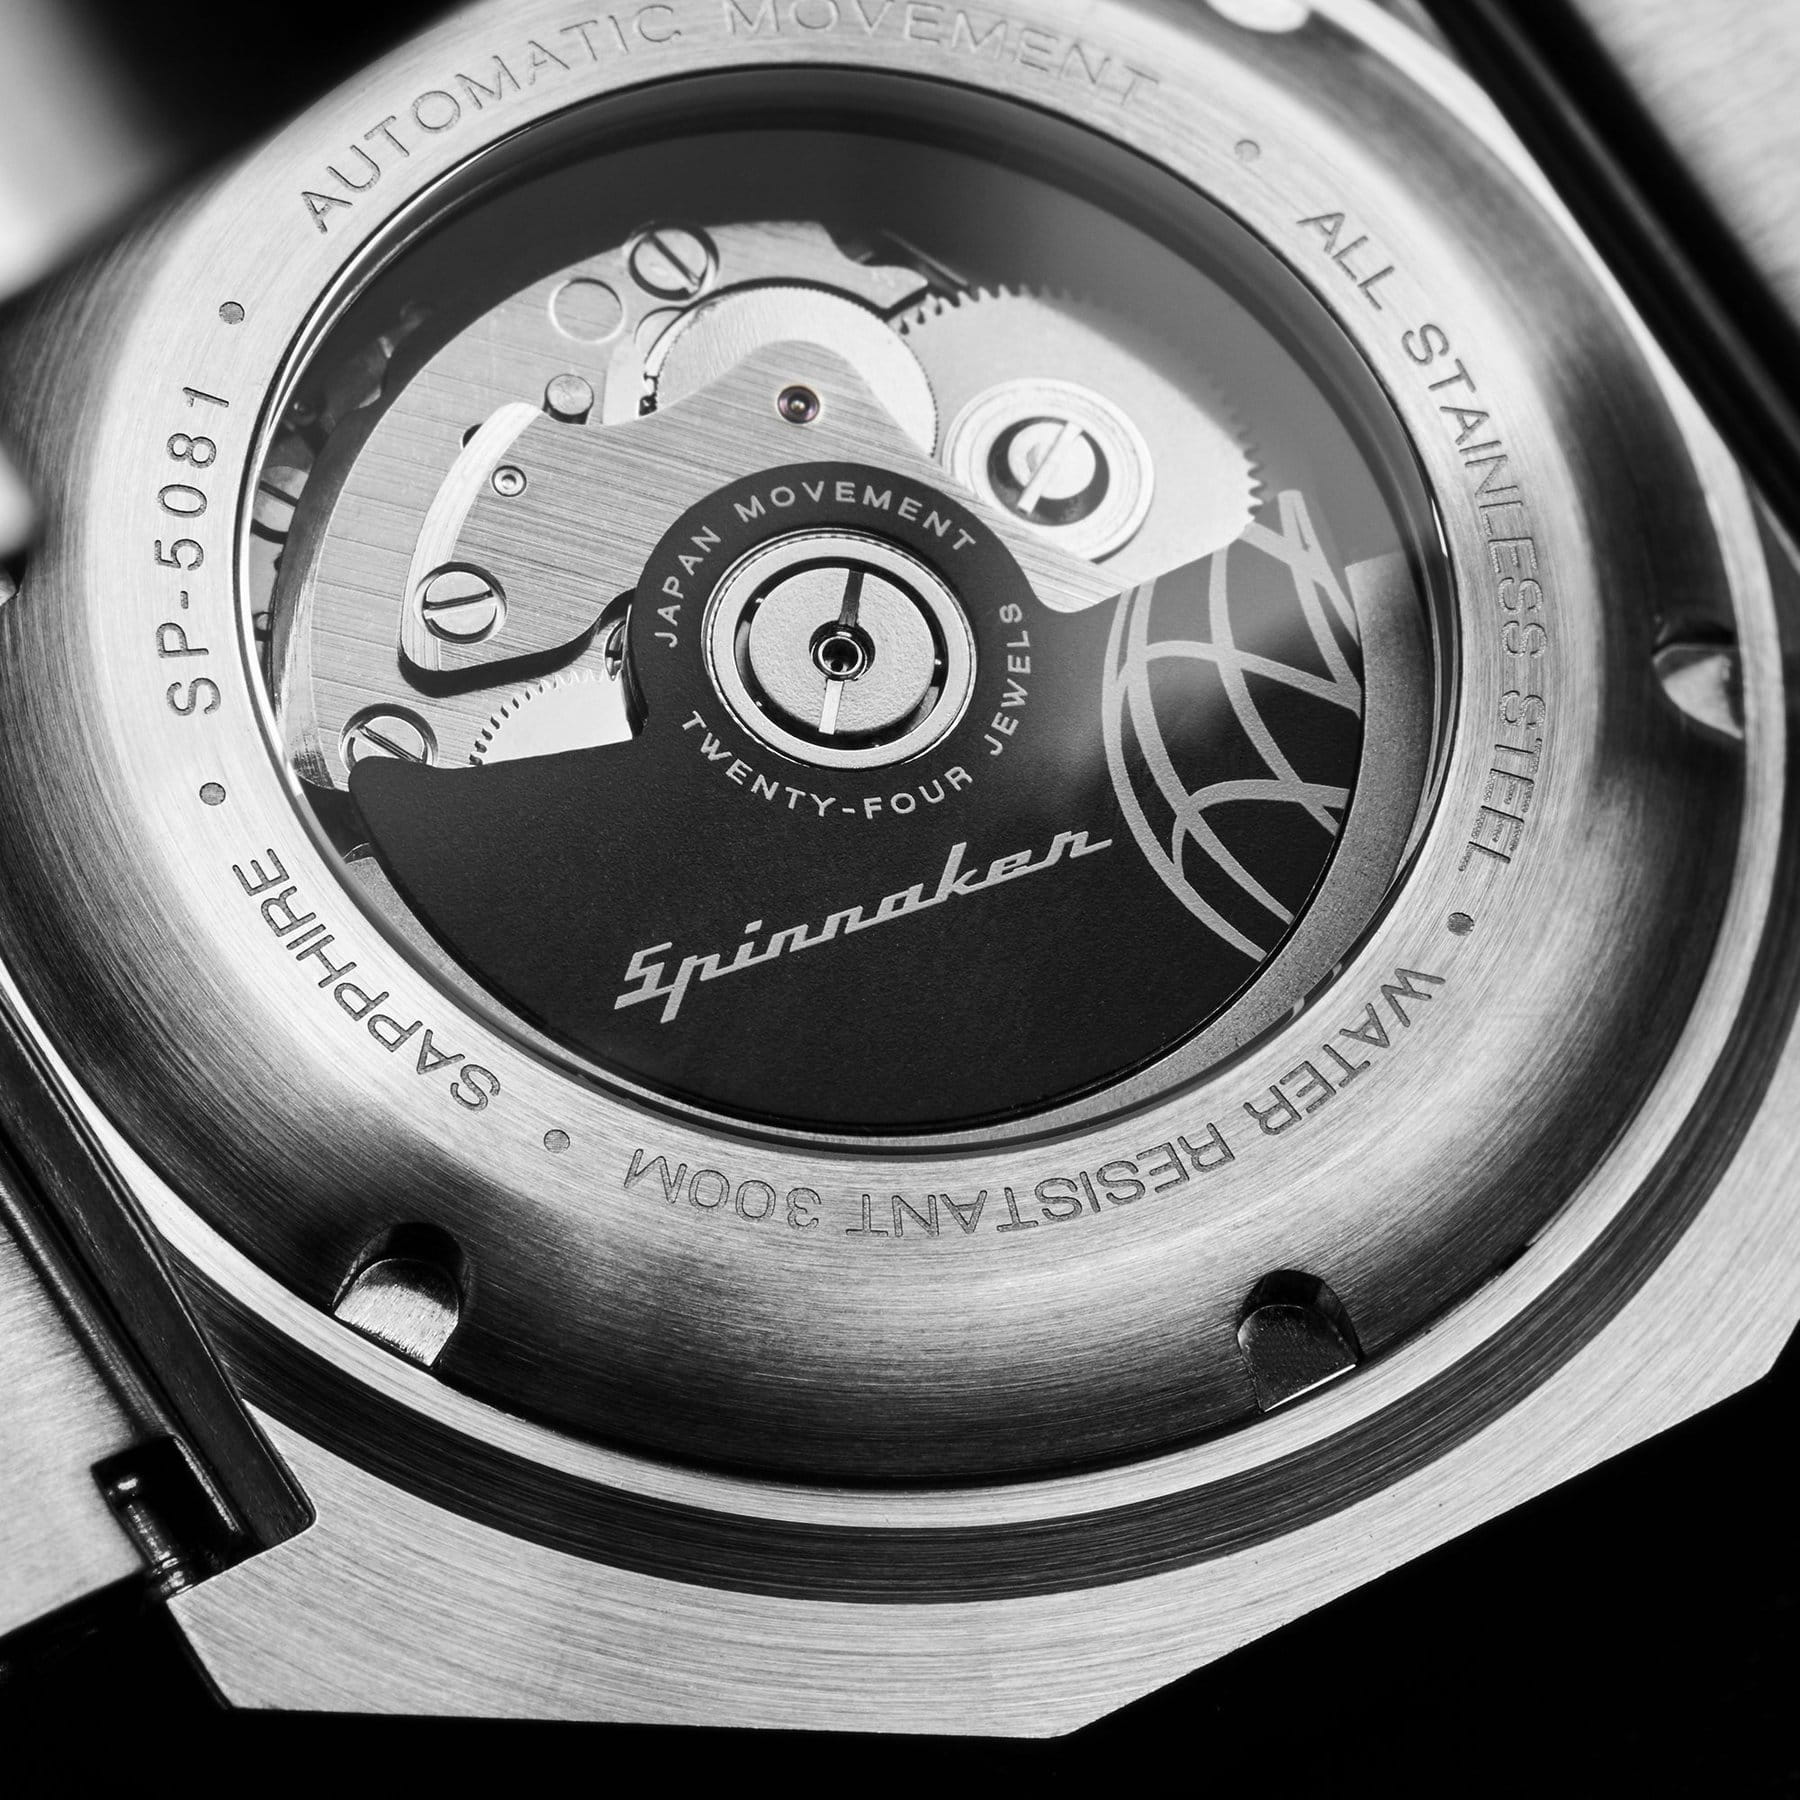 Zegarek męski Spinnaker Dumas Sp-5081-66